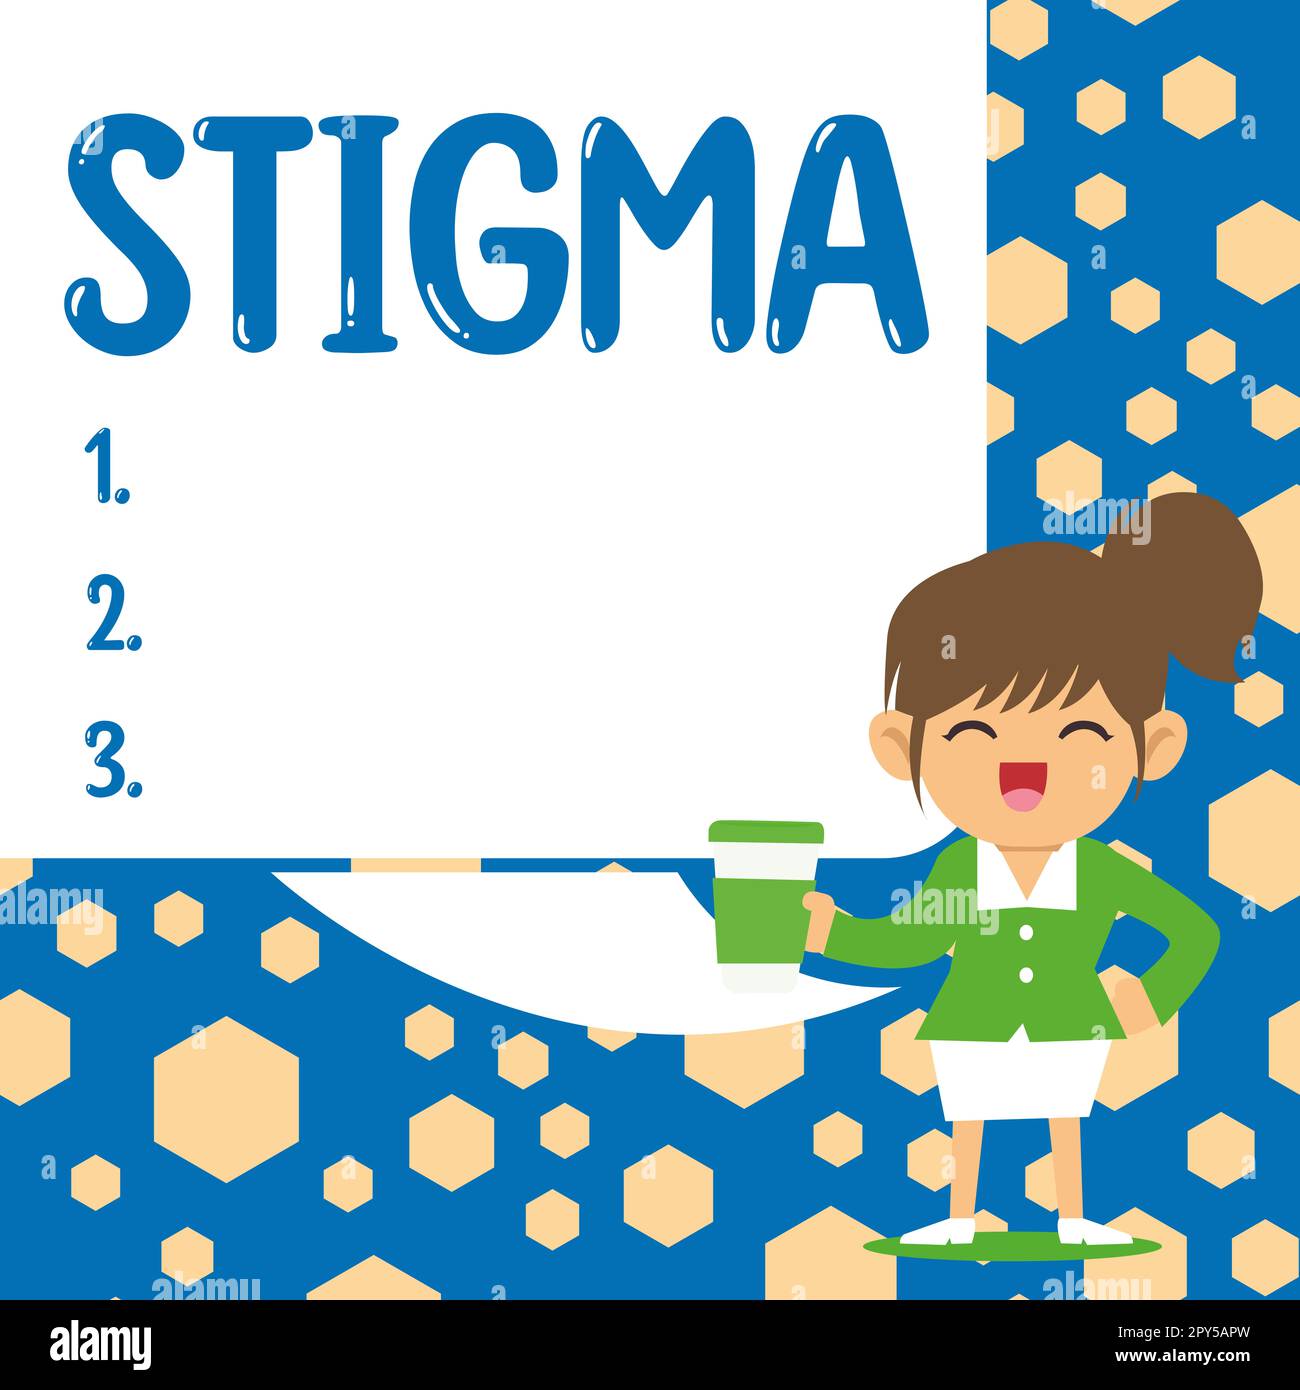 Konzeptionelle Bildunterschrift Stigma. Ein Wort für das Gefühl der Missbilligung, das die meisten Menschen in der Gesellschaft haben Stockfoto